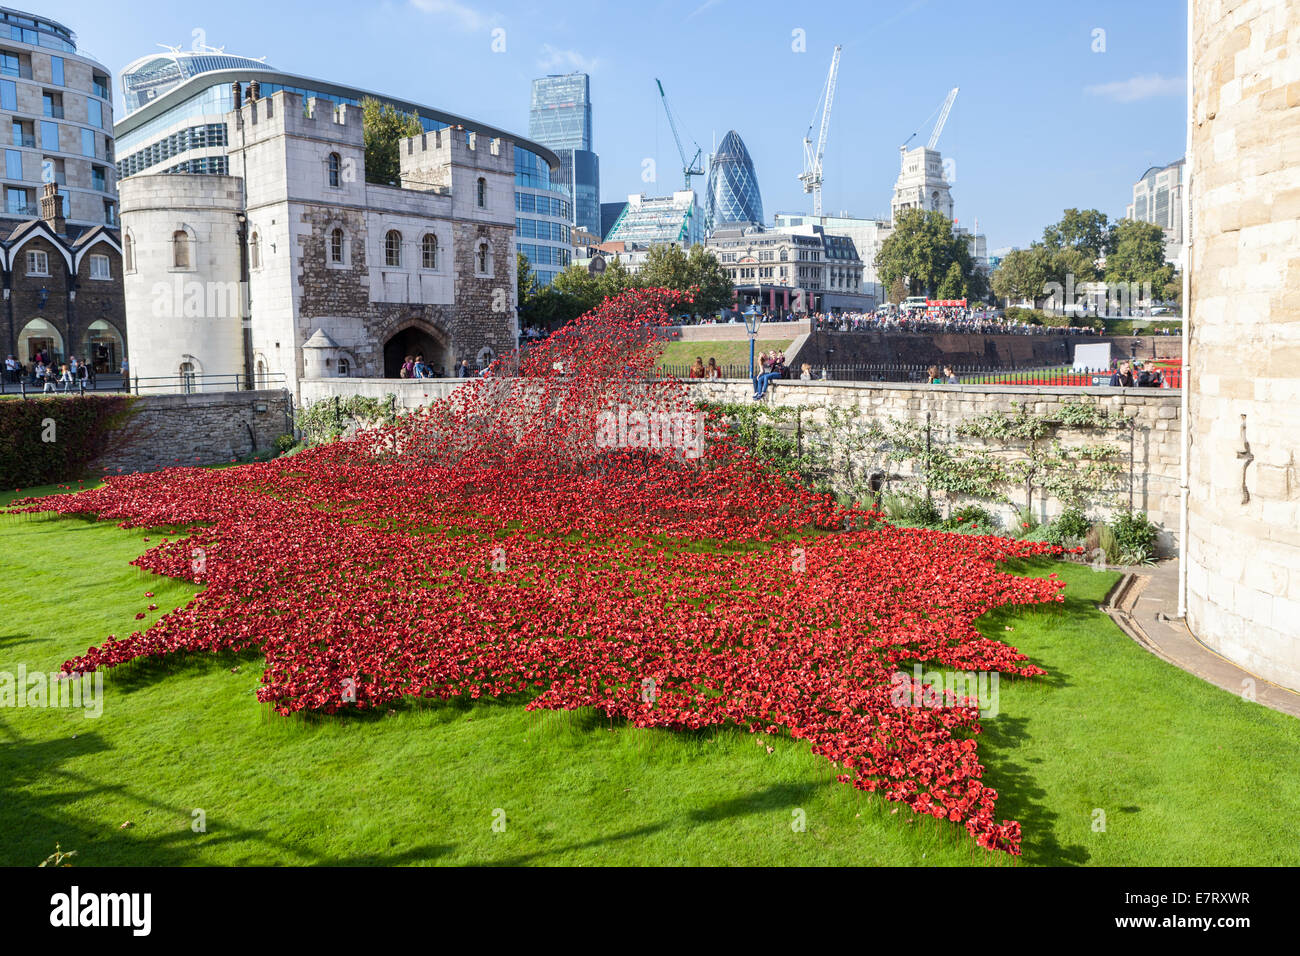 Coquelicots rouges en céramique créer un 'champ du sang' pour commémorer le centenaire de la première guerre mondiale à la Tour de Londres. Banque D'Images